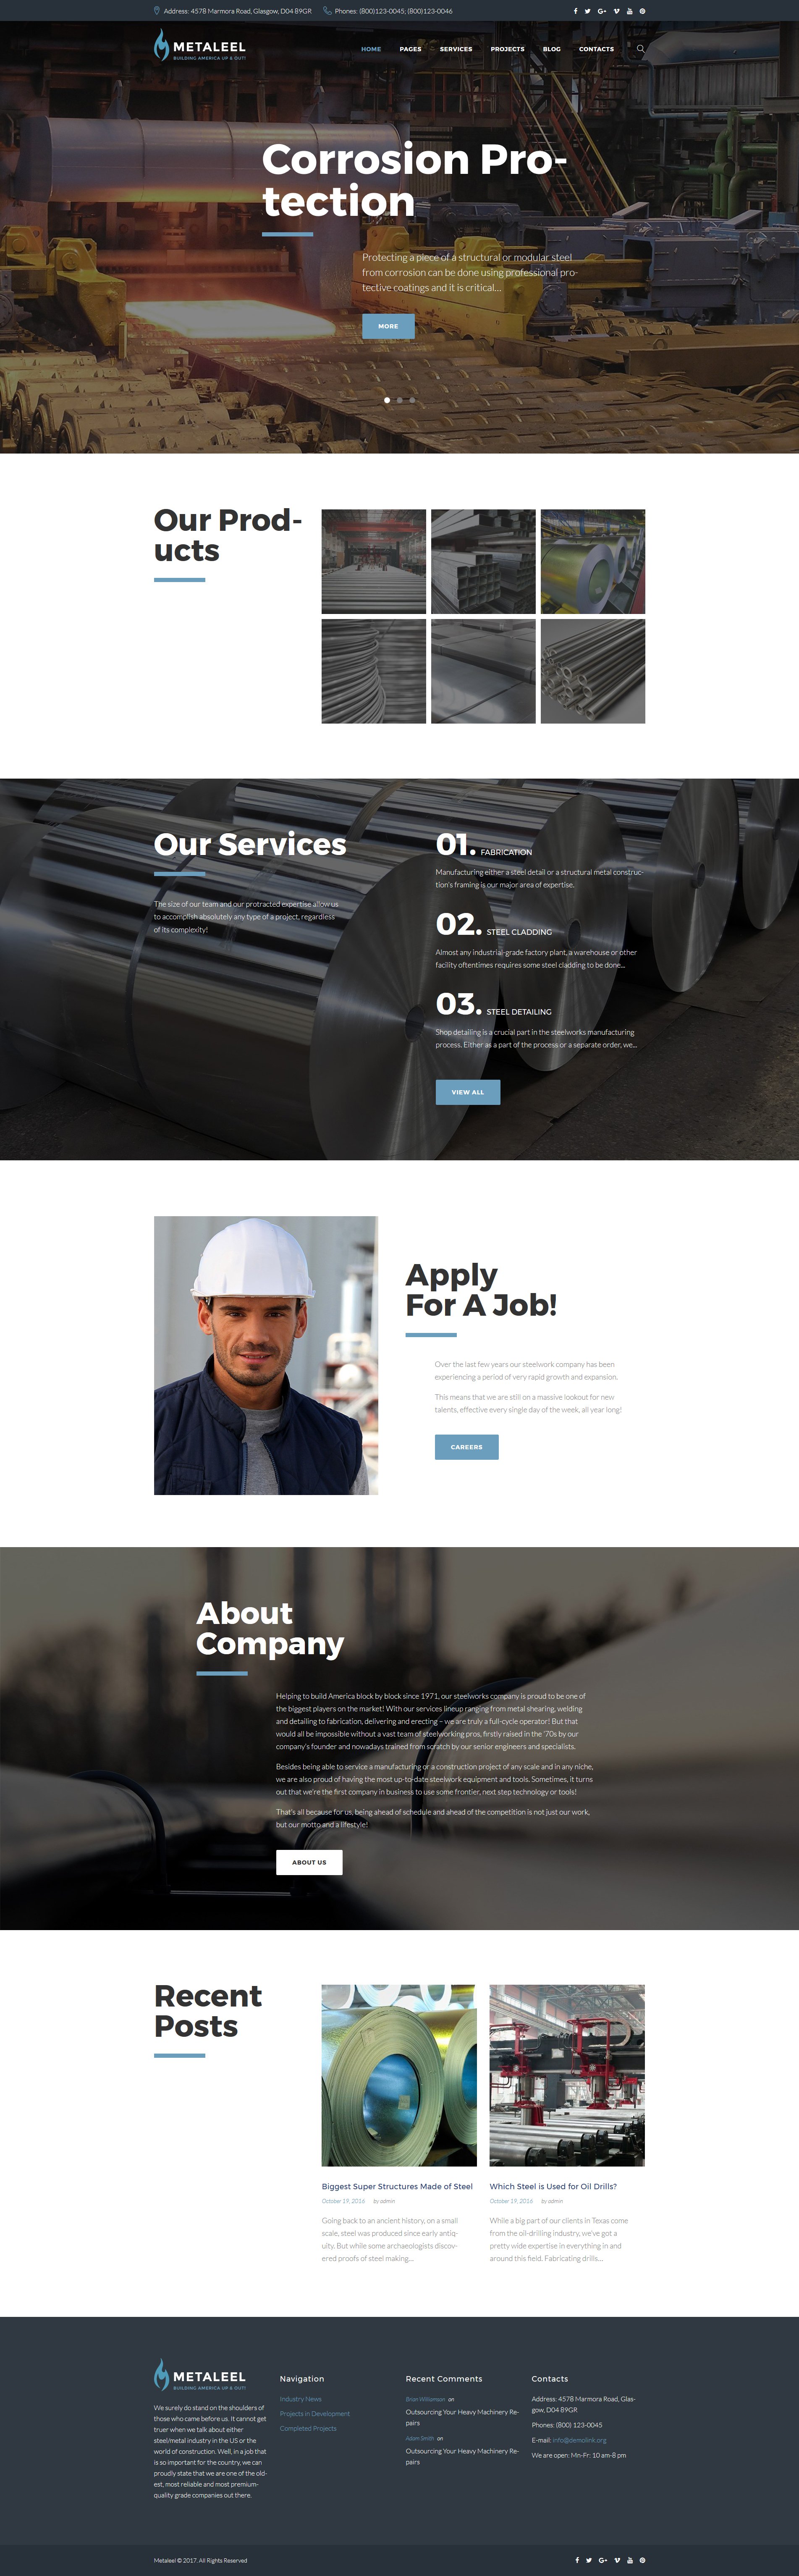 Mataleel - Industrial Company Website Template For WordPress